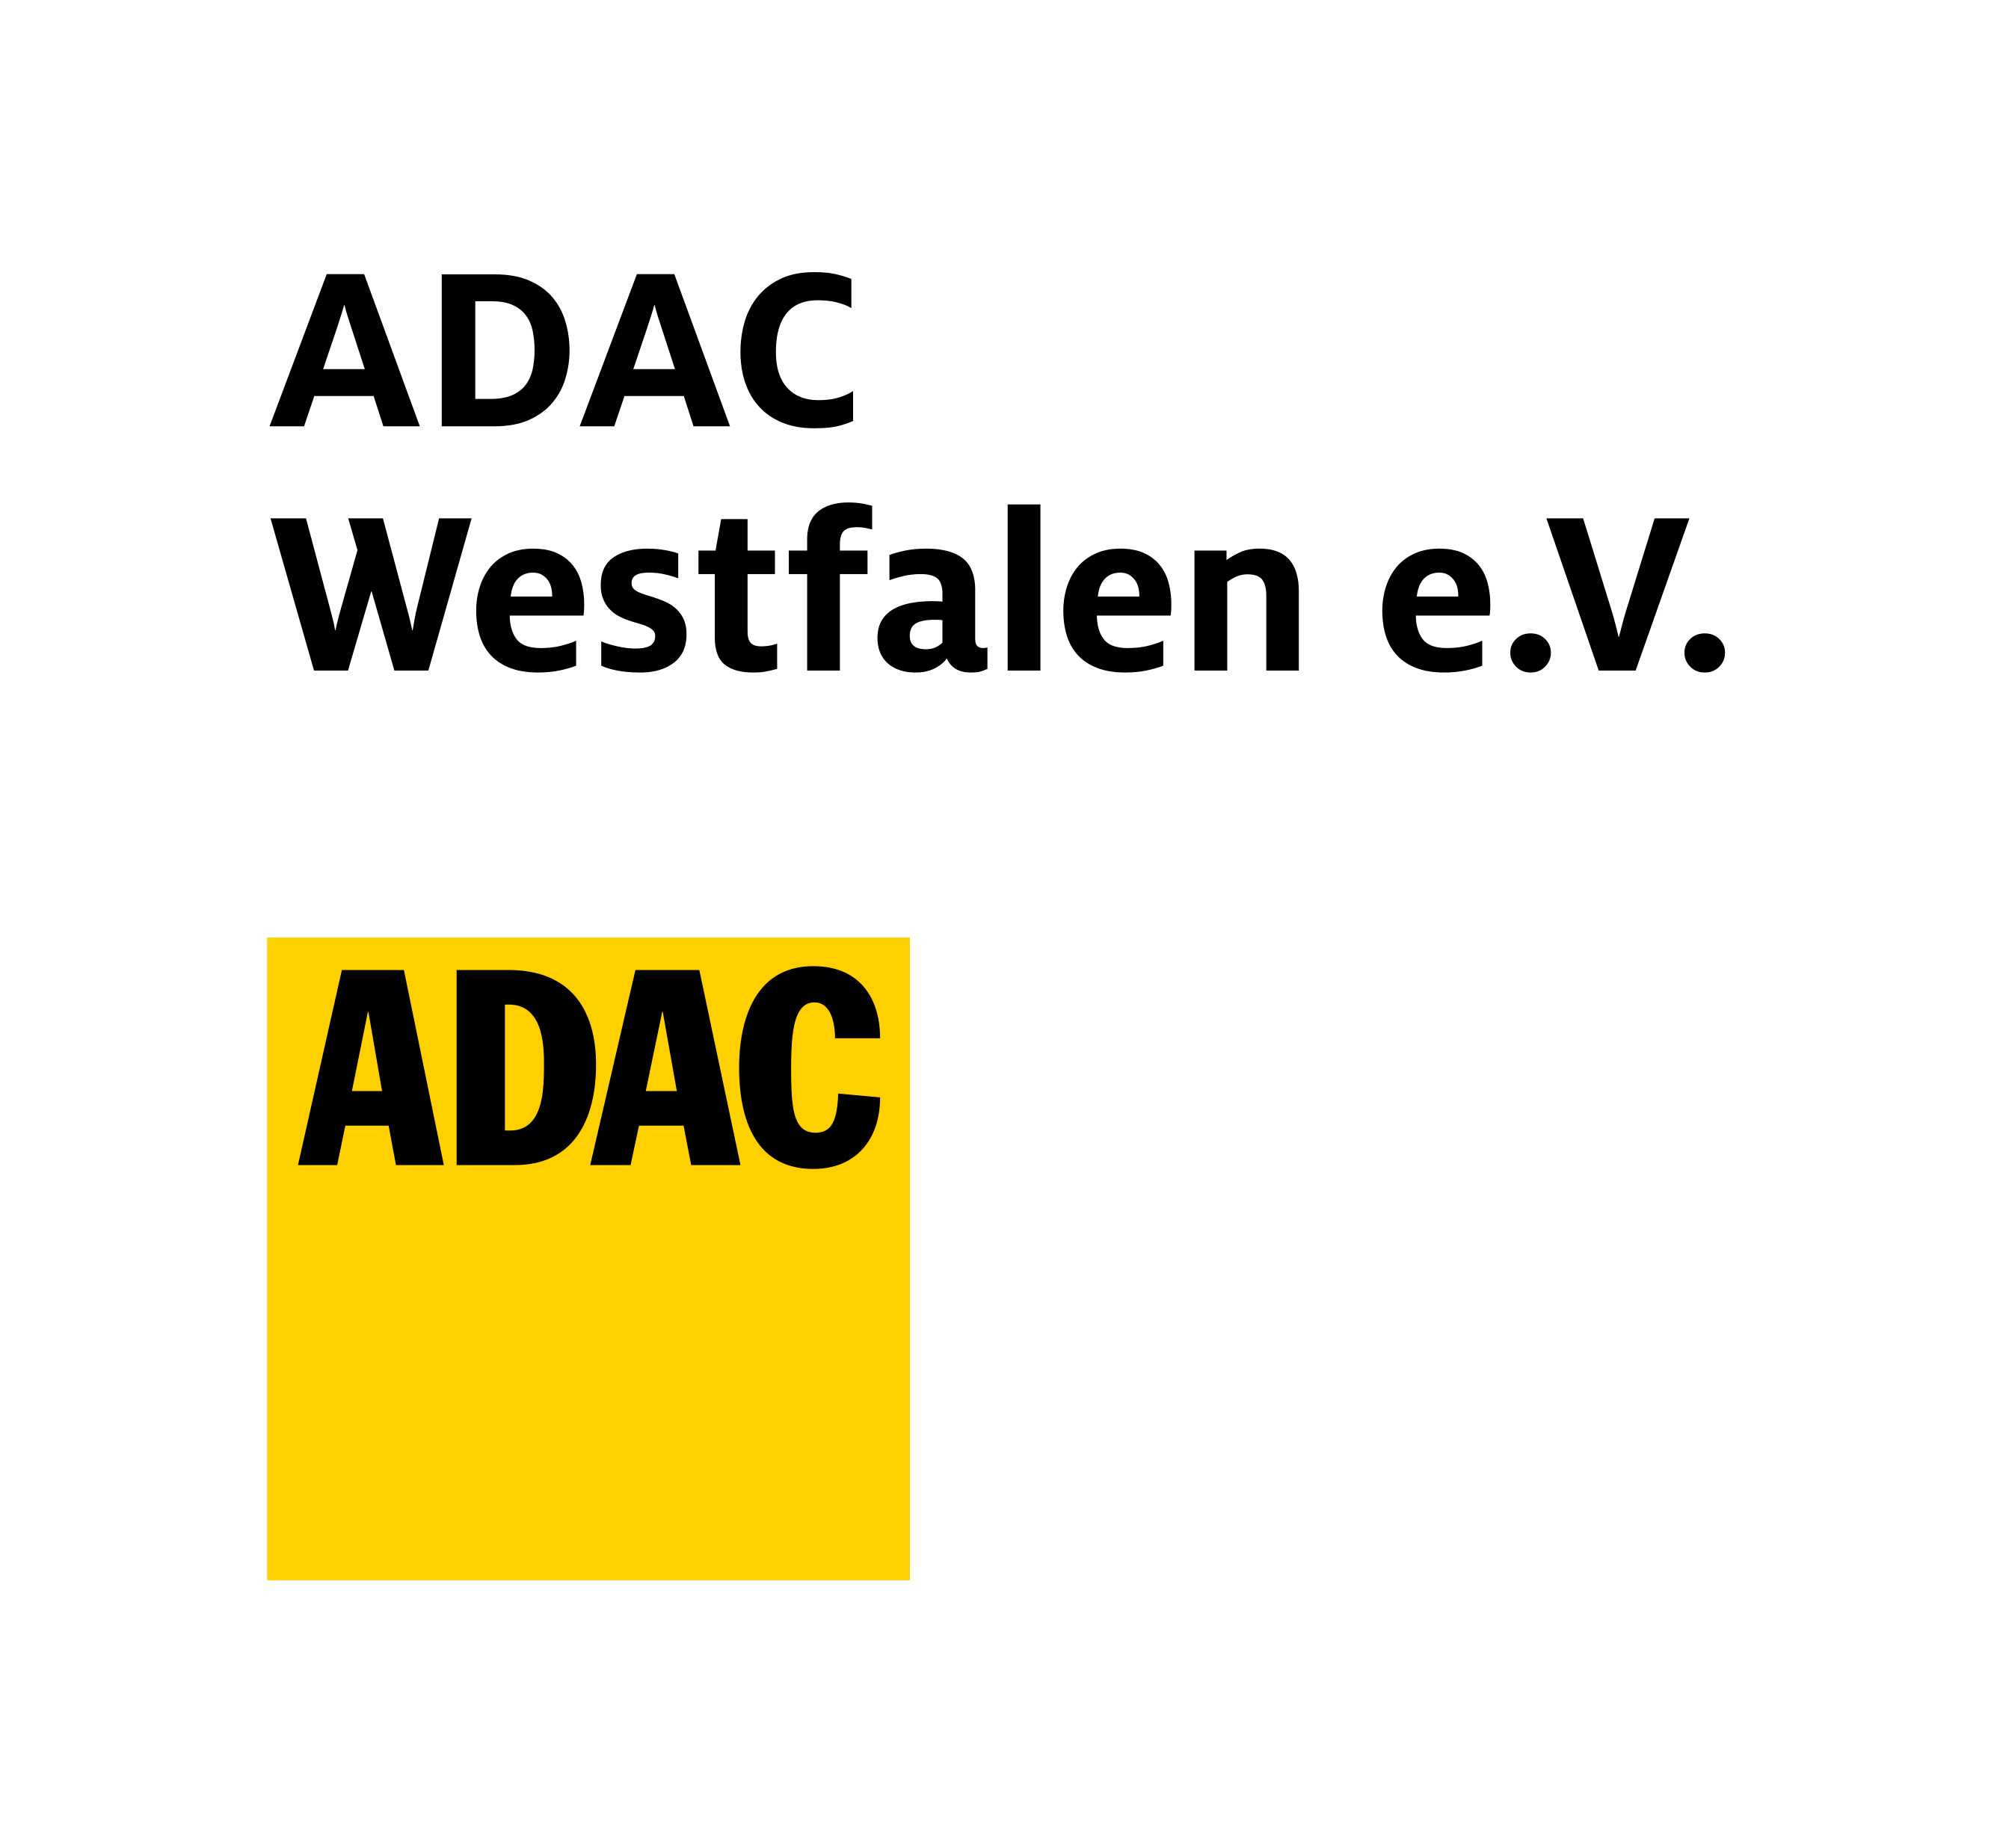 ADAC Westfalen e.V.